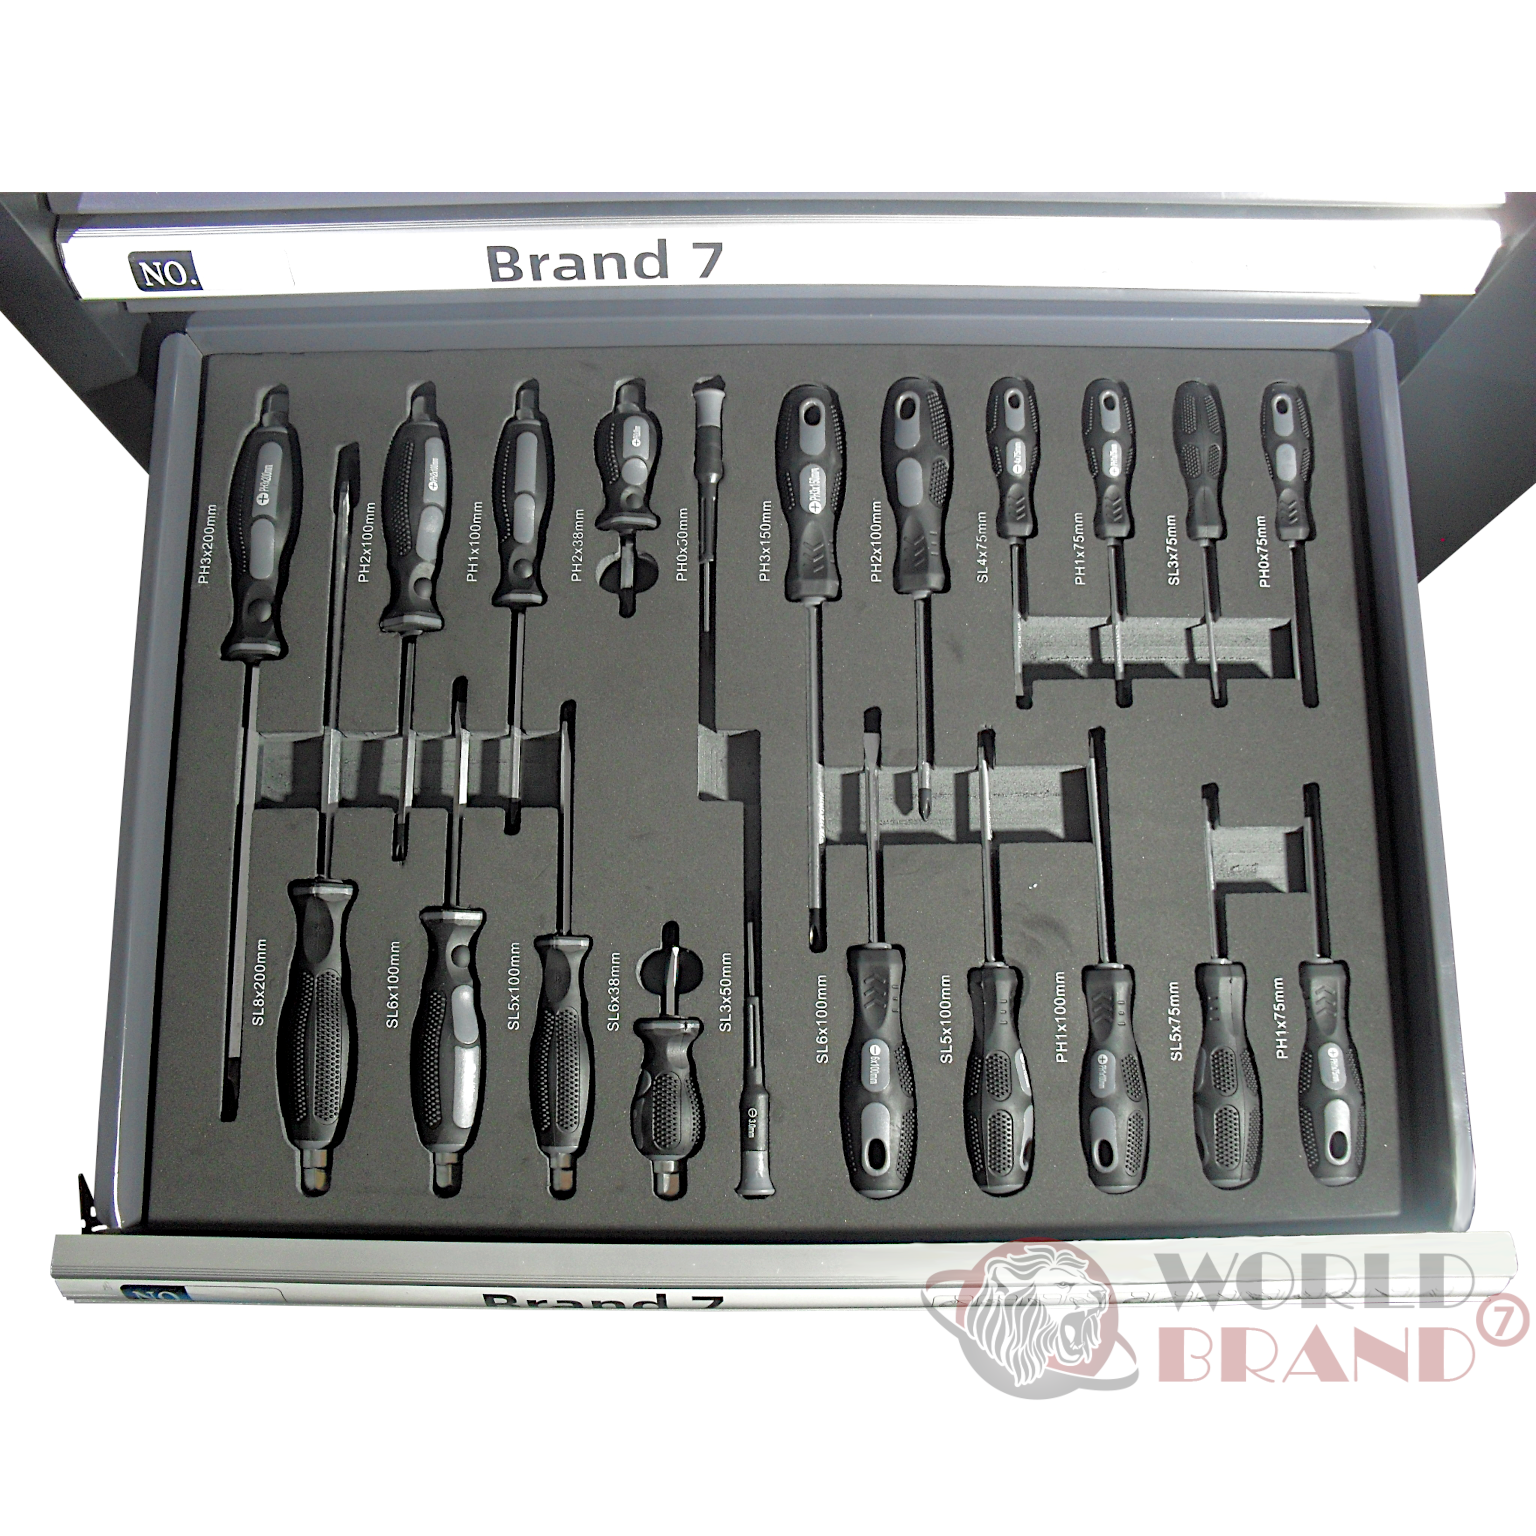 Werkstattwagen BRAND7 - 7 Schubladen mit Werkzeug schwarz - World Brand 7